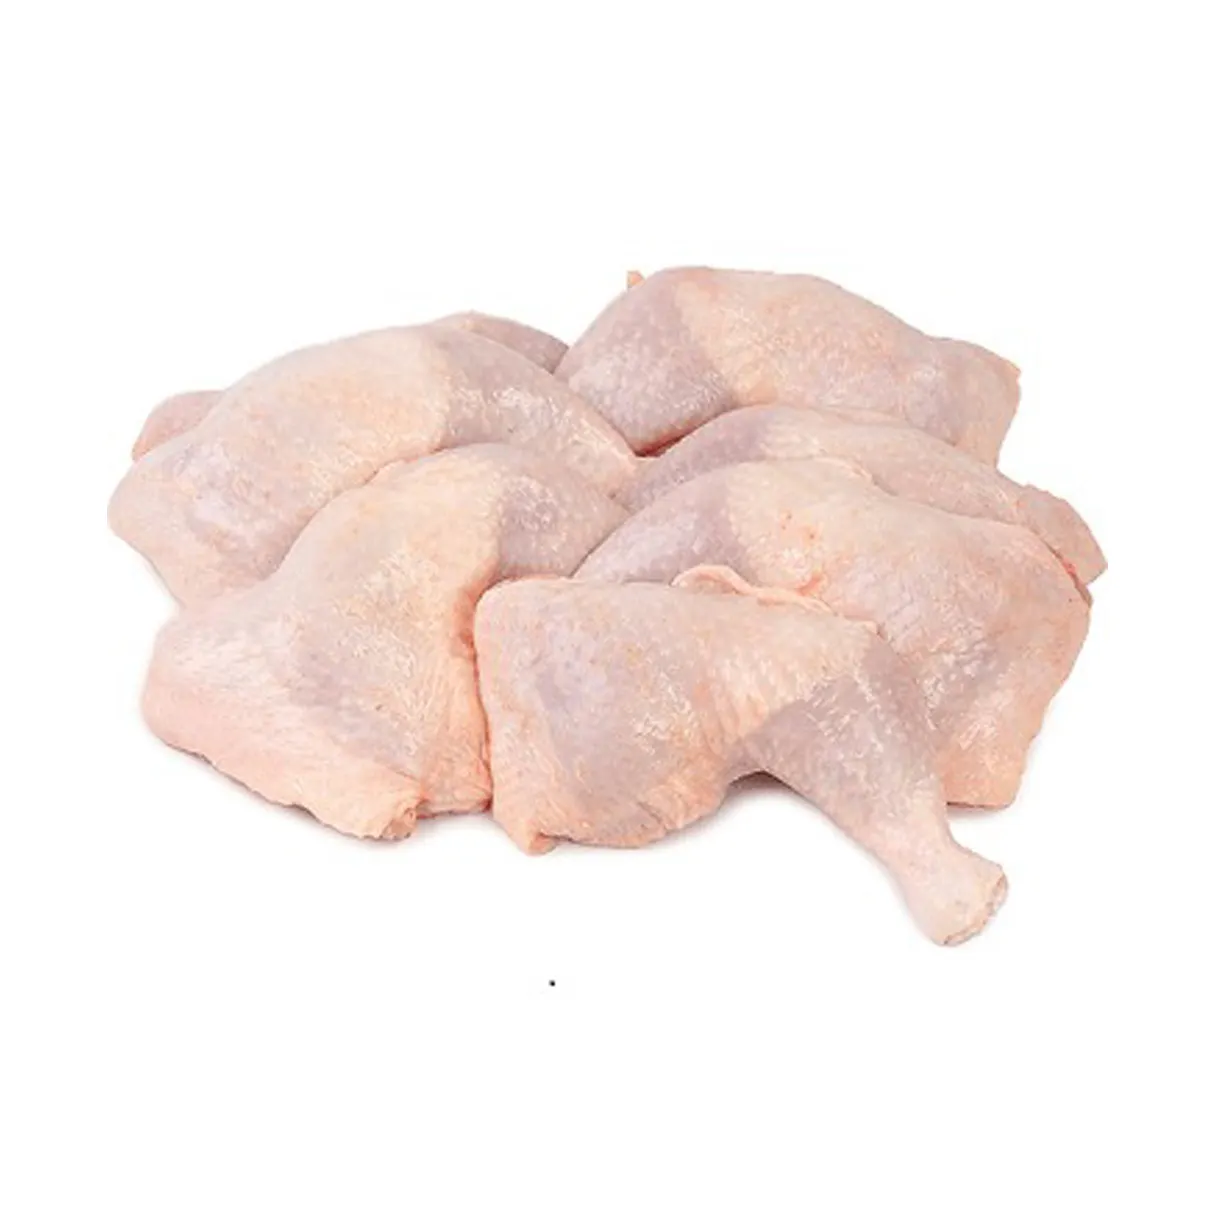 قطع رباعية قدم من الدجاج نظيفة بدون رائحة كريهة وبدون دم وبدون كدمات بسعر منخفض قطع رباعية قدم من الدجاج المجمد الحلال للبيع